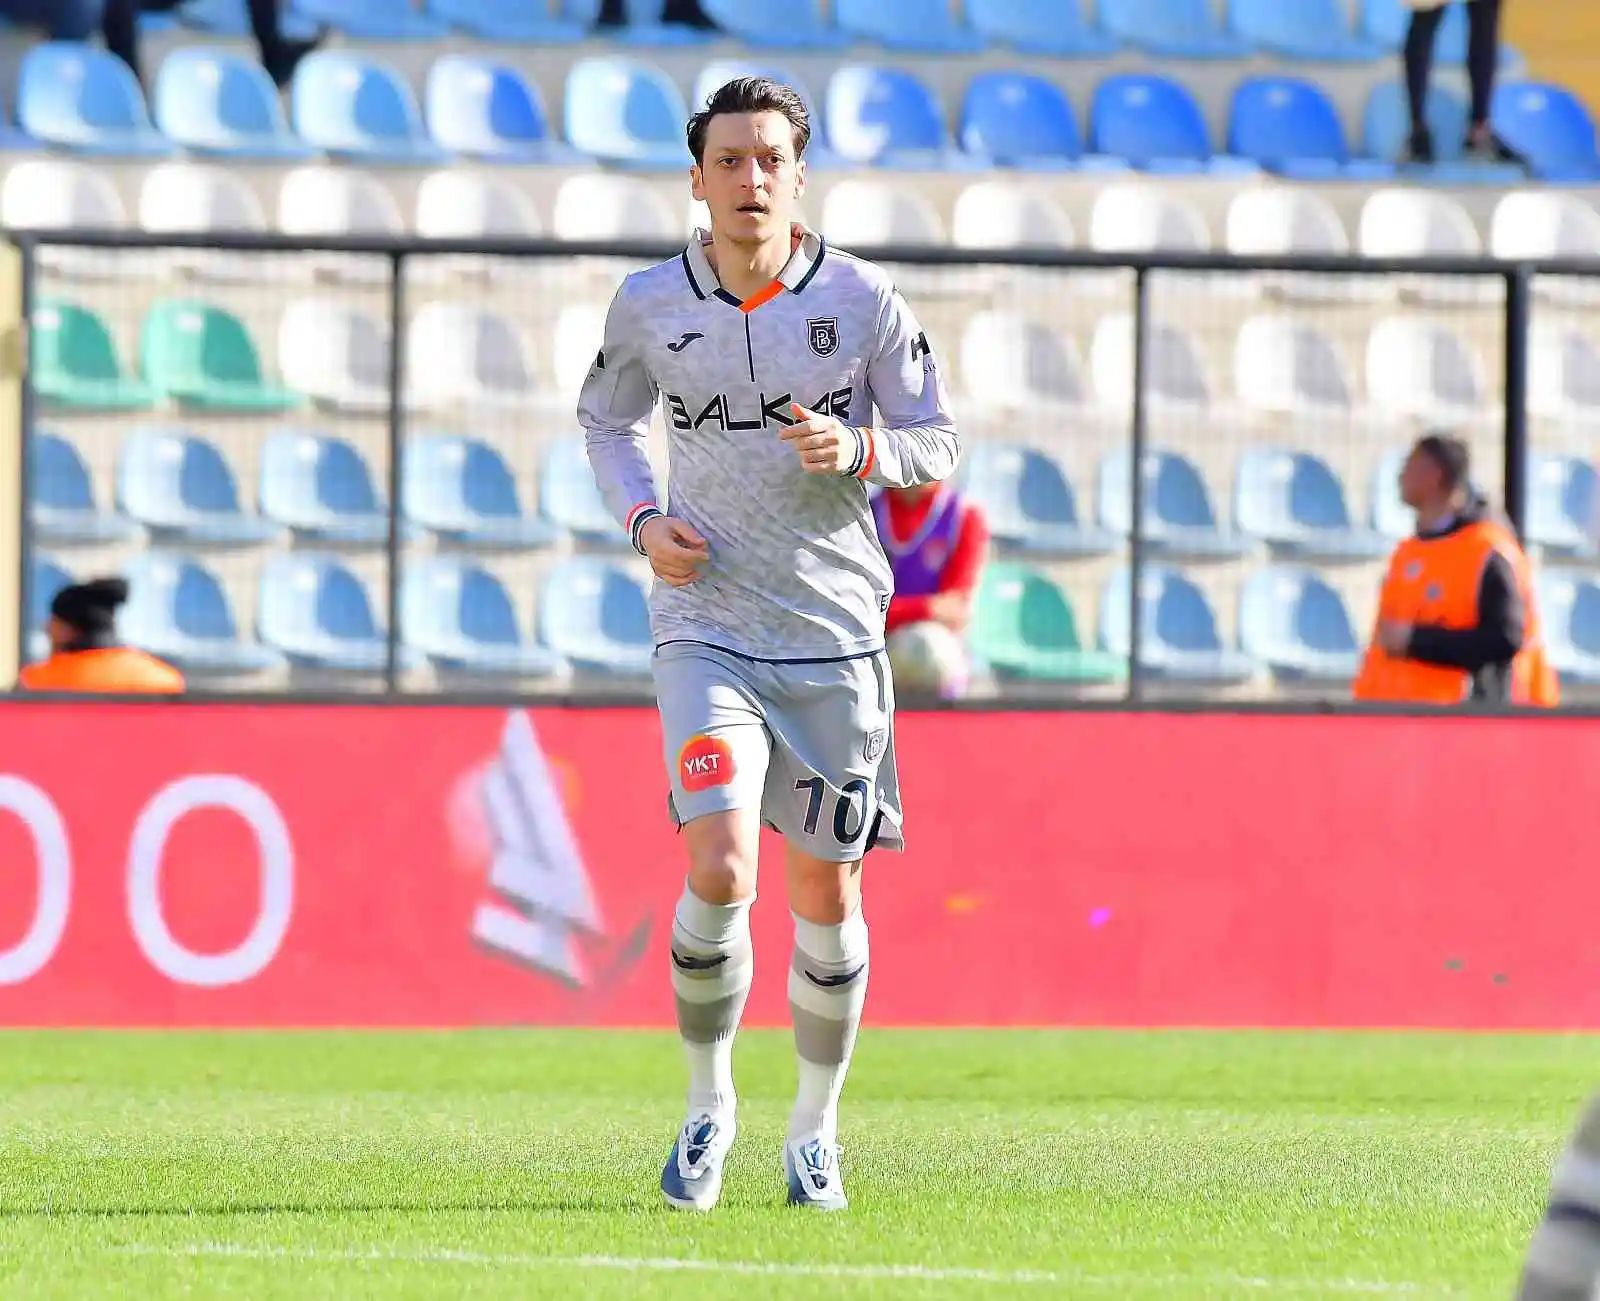 Ziraat Türkiye Kupası: Fatih Karagümrük: 0 - Medipol Başakşehir: 0 (İlk yarı)
